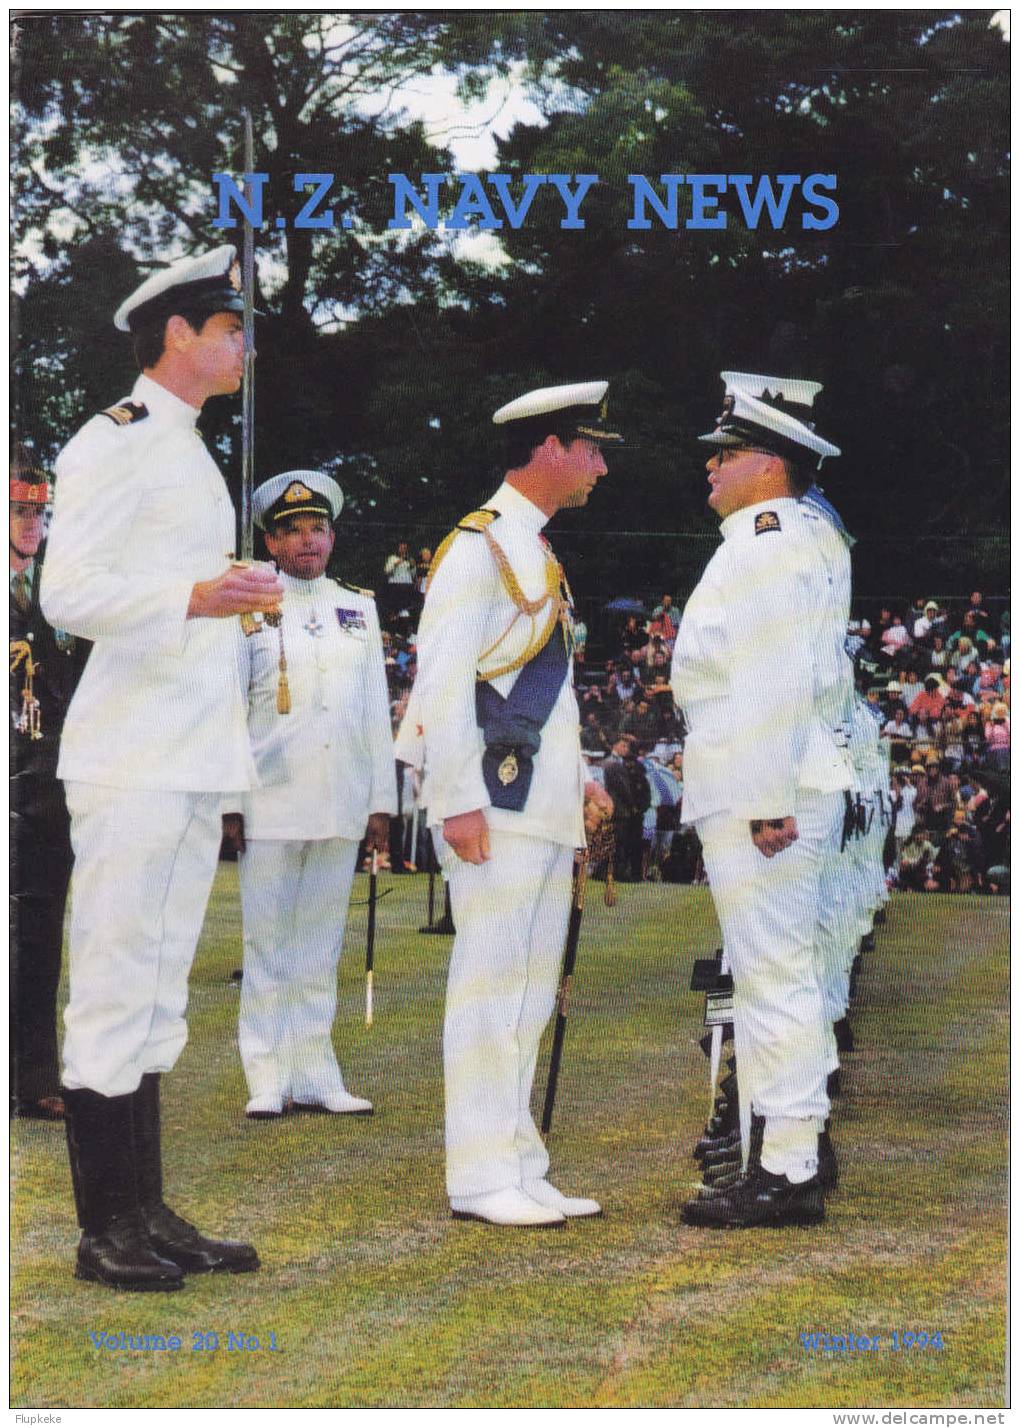 Navy News New Zealand 01 Vol 20 Winter 1994 - Military/ War